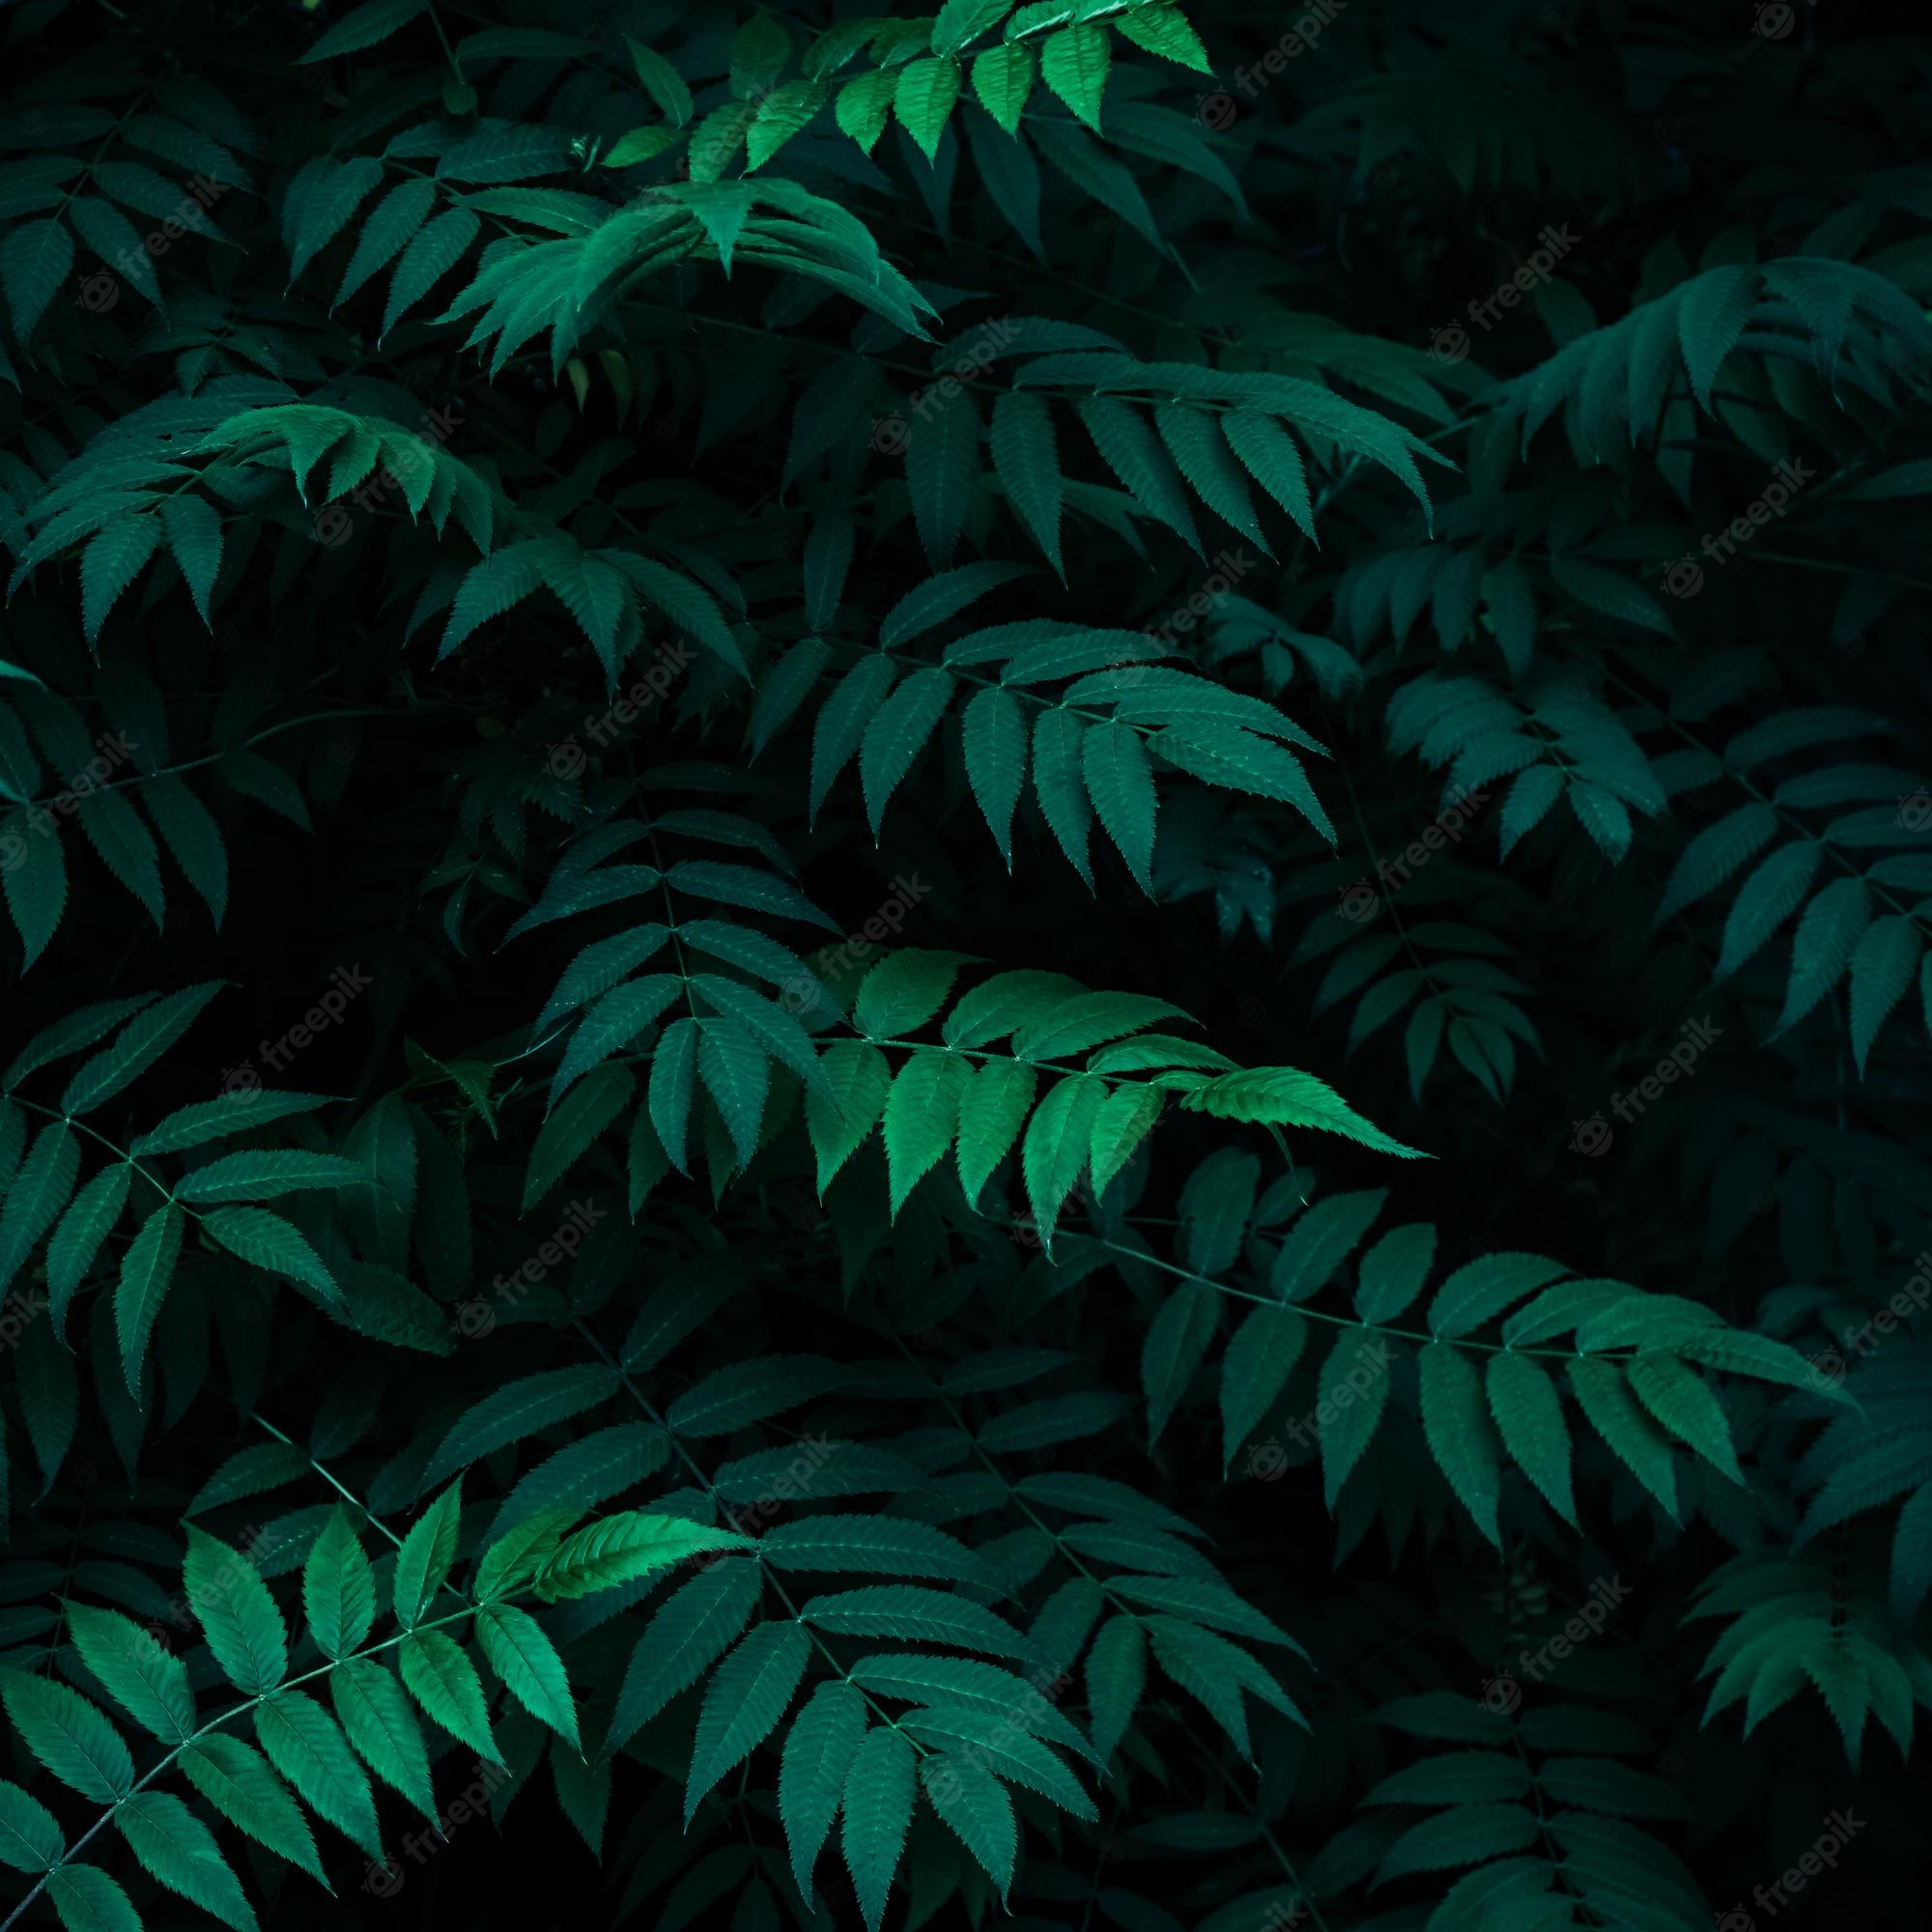 A dark green leafy background with light - Dark green